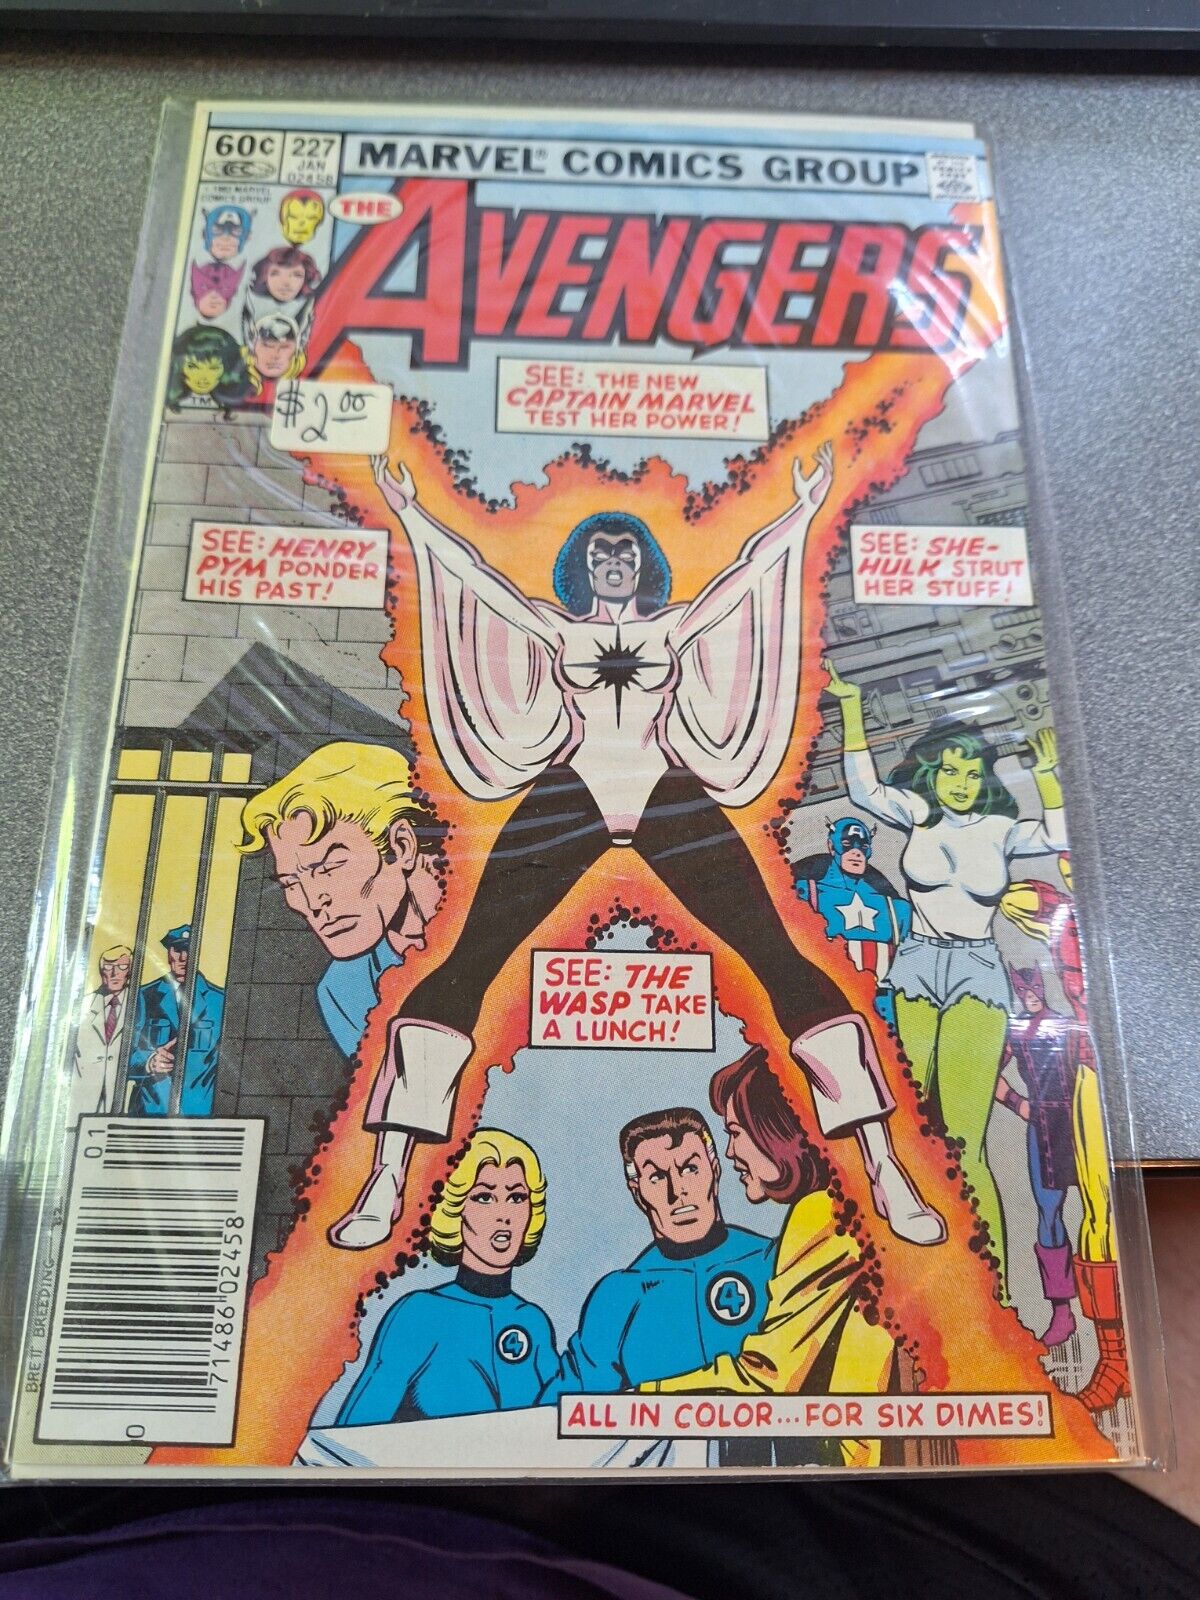 Marvel Comics Avengers Issue 227 VF/NM /9-70